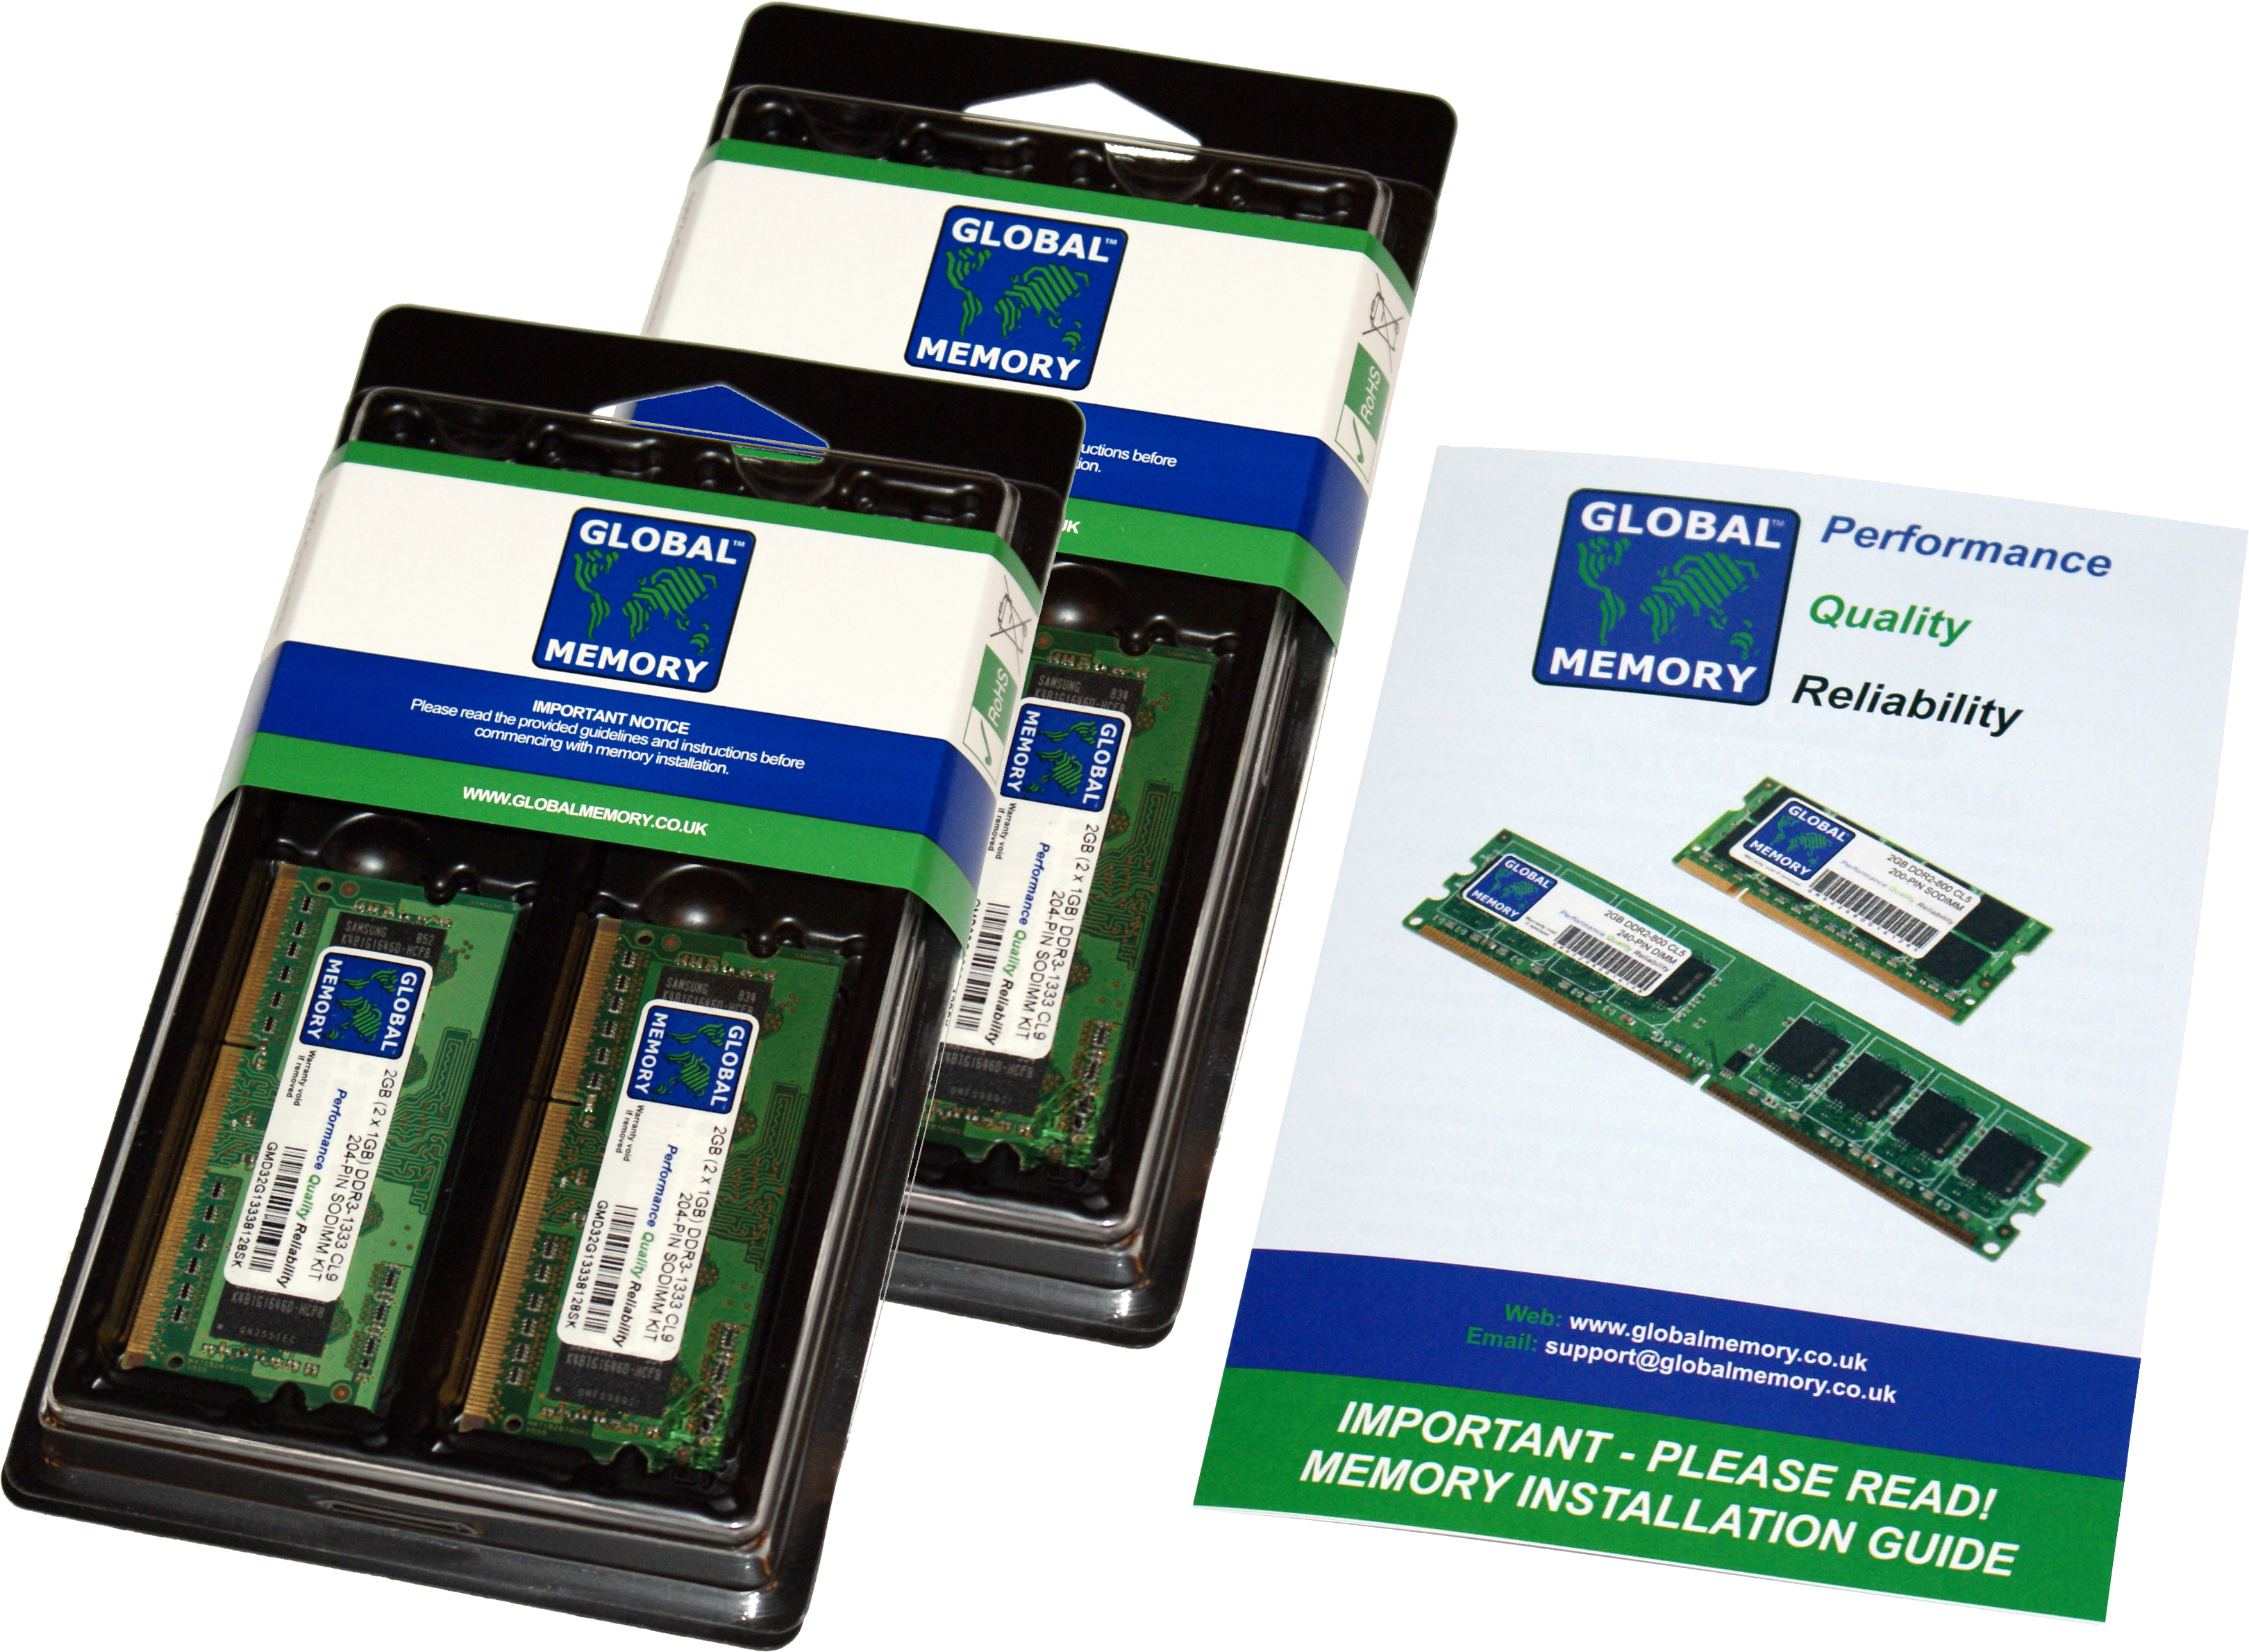 32GB (4 x 8GB) DDR4 2666MHz PC4-21300 260-PIN SODIMM MEMORY RAM KIT FOR 27" RETINA 5K IMAC (2019/2020)